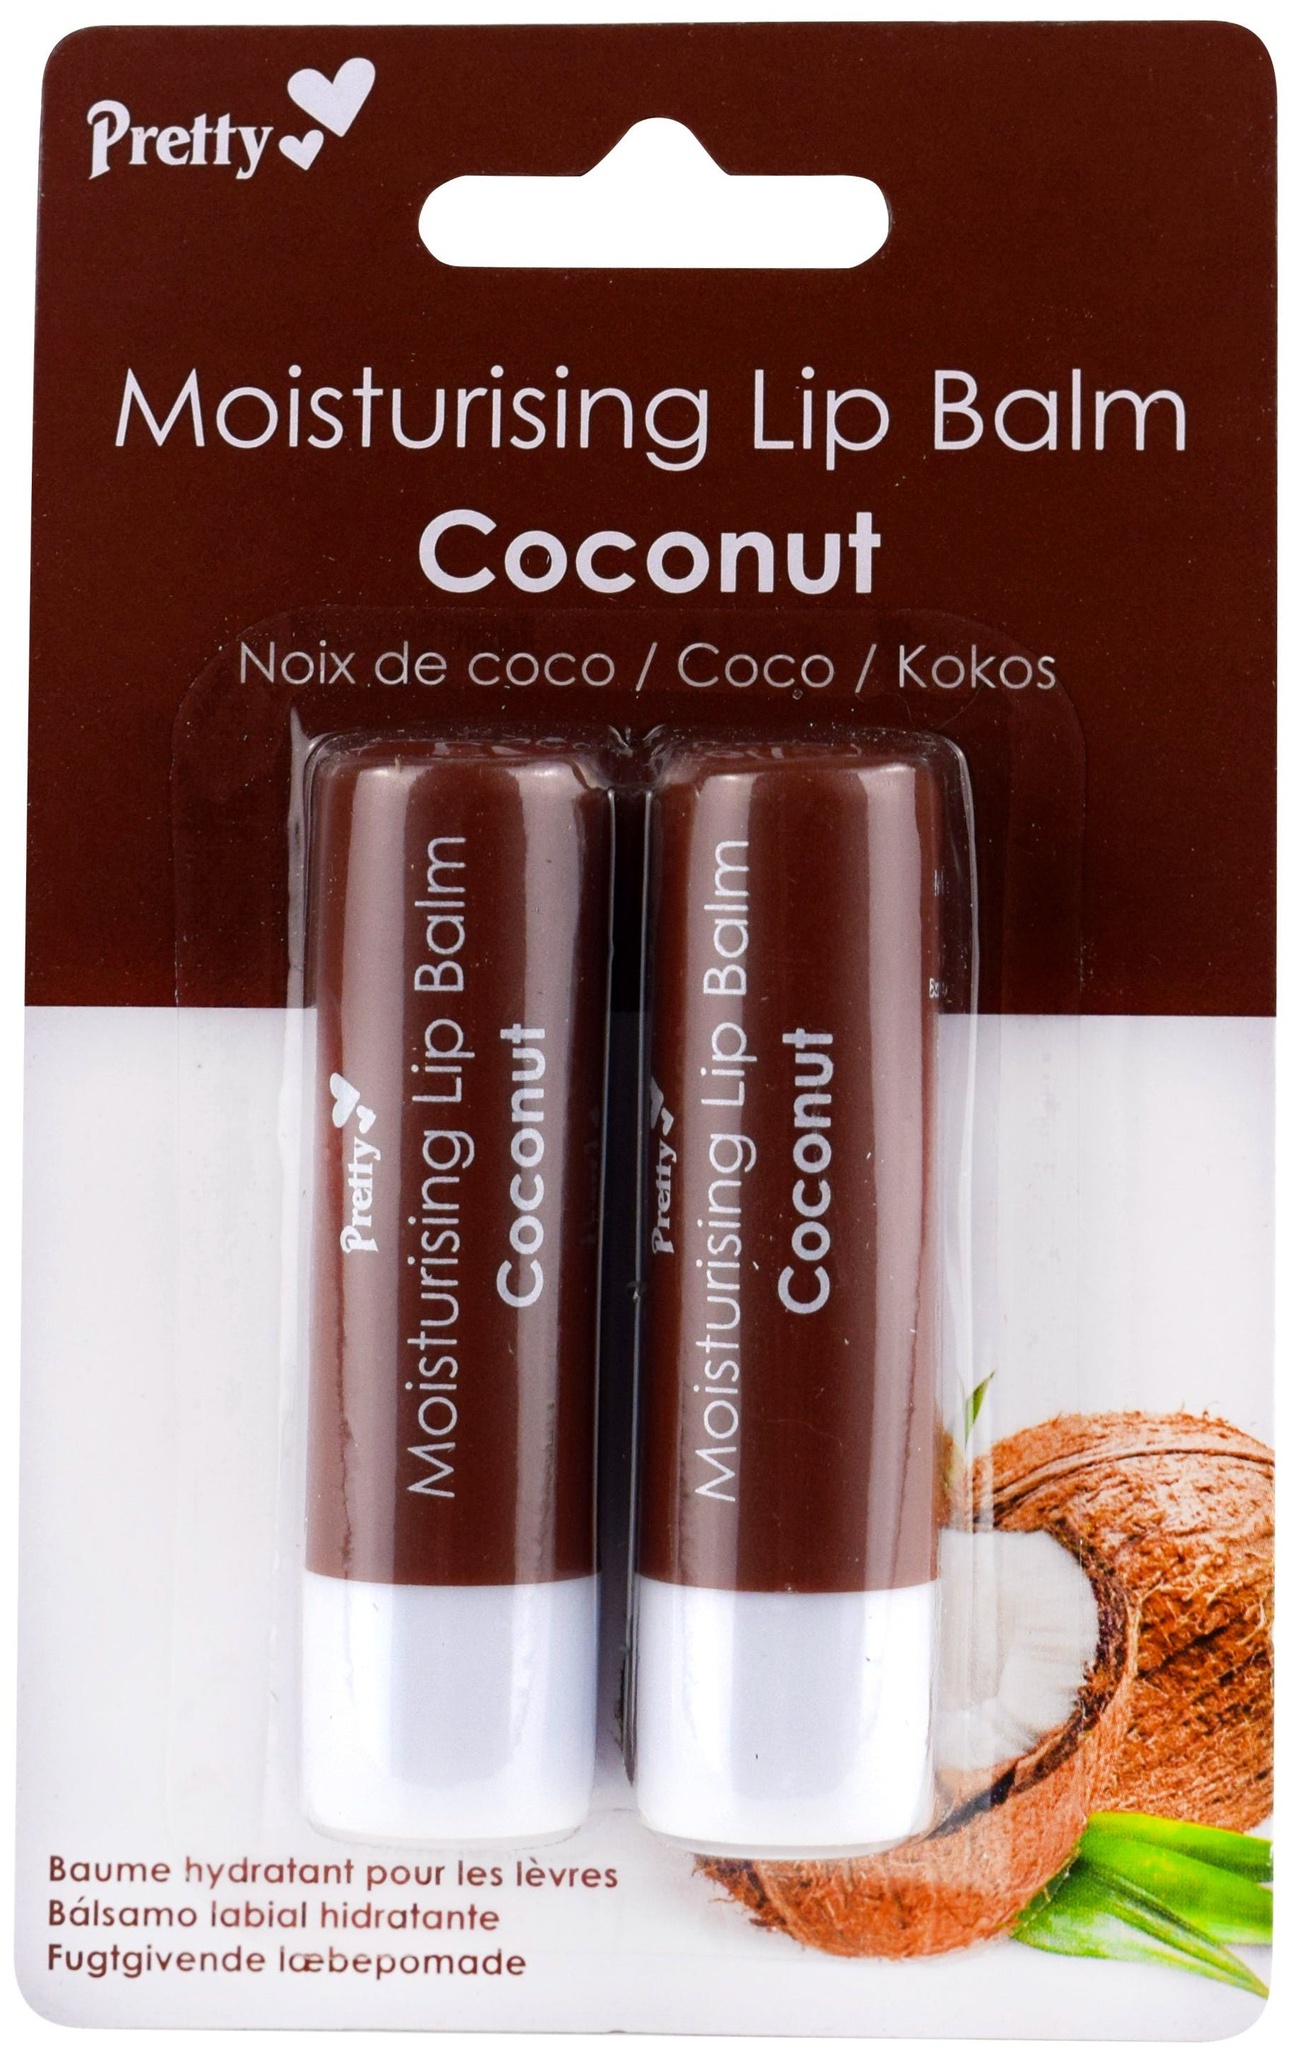 Pretty Coconut Moisturising Lip Balm